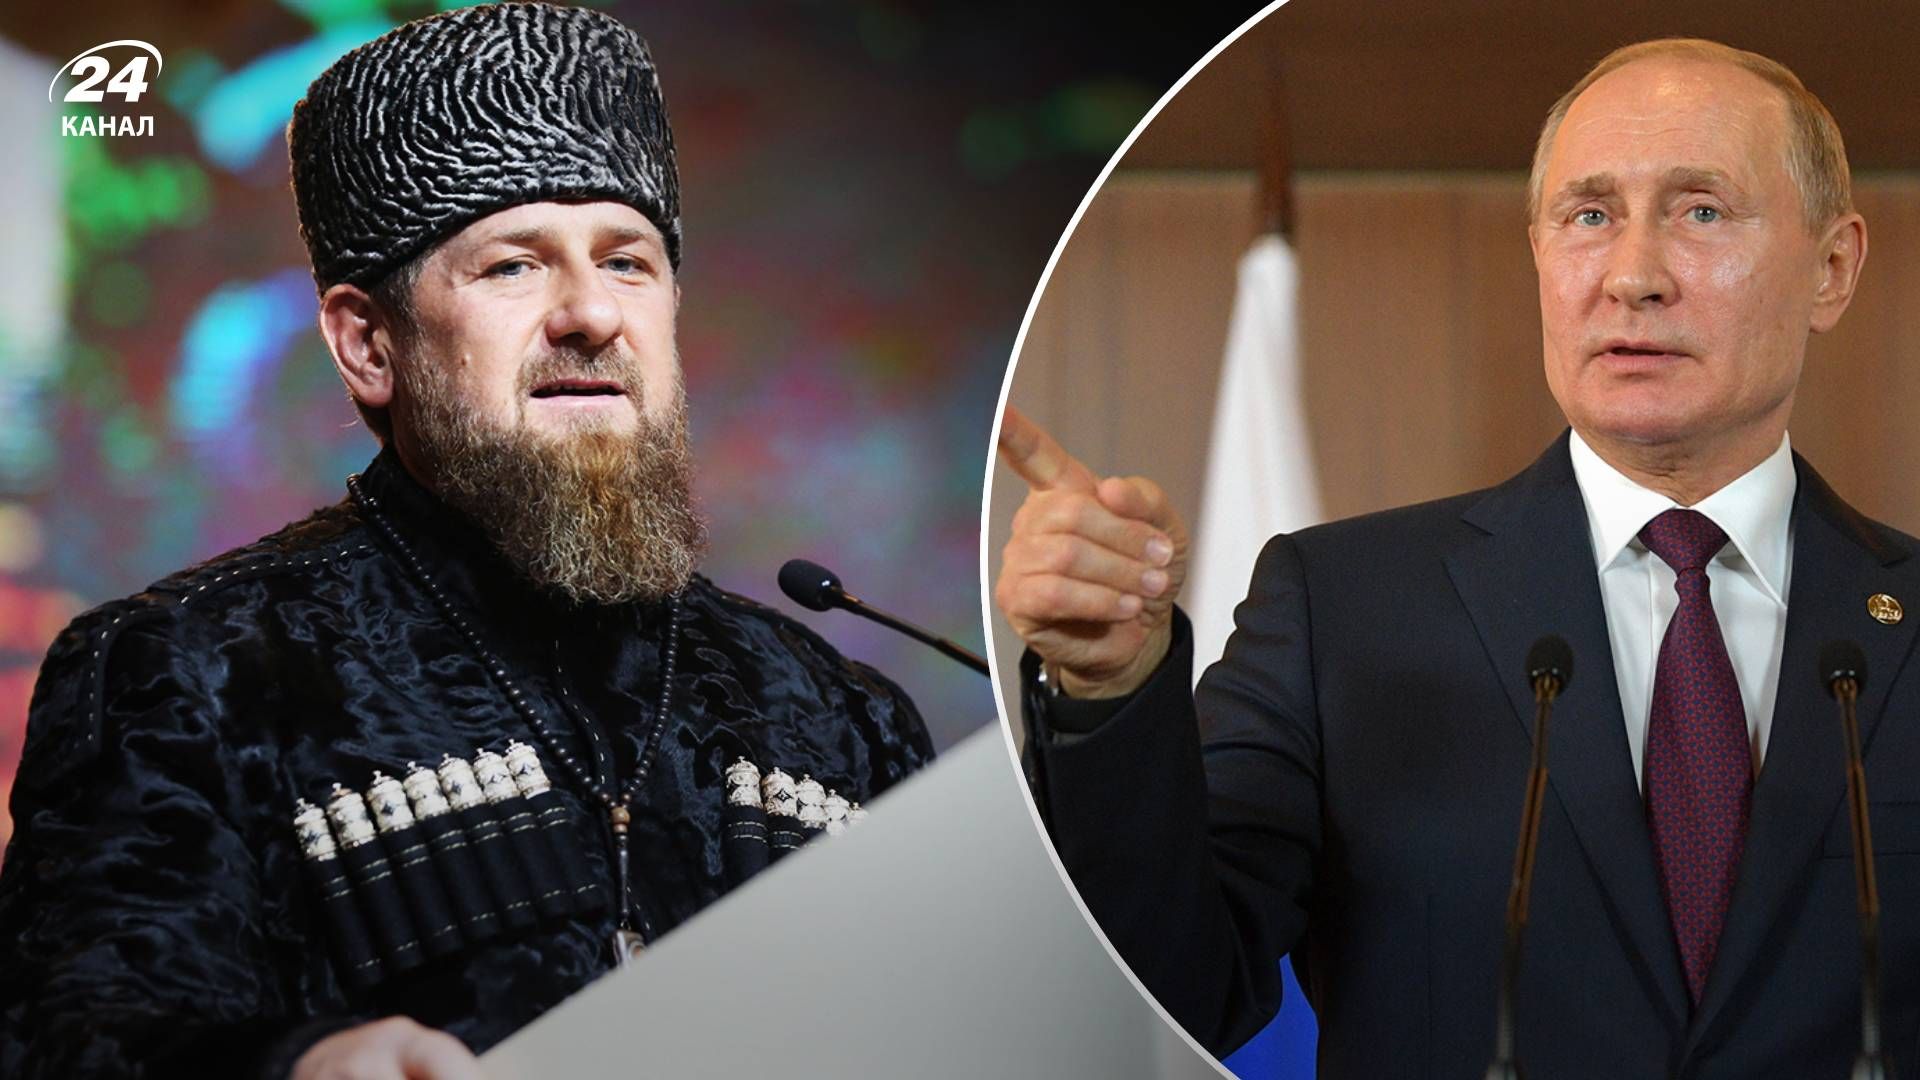 Кадыров разрешил наказывать родственников преступников а Путин молчит по этому поводу